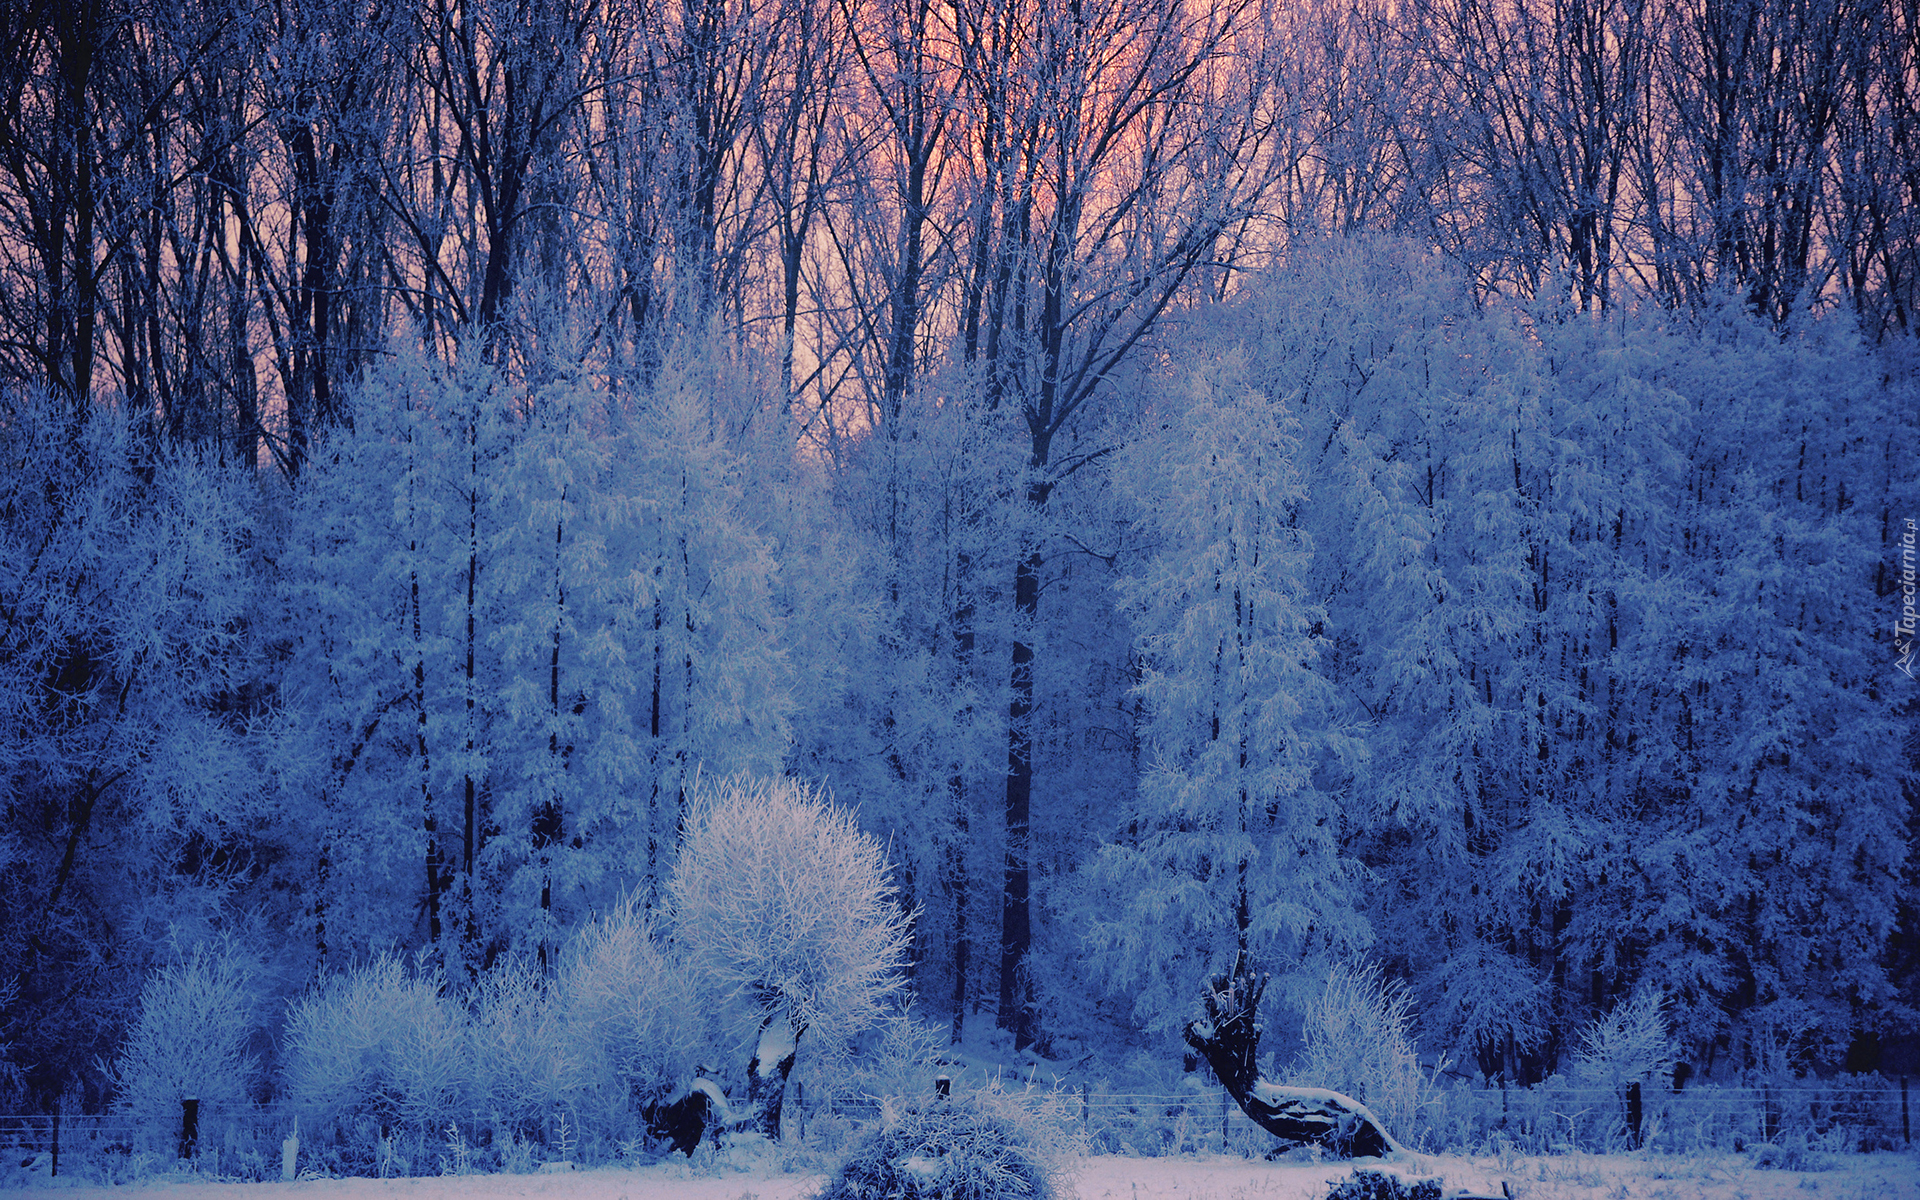 Фф и в морозном лесу я навеки. Зимний лес. Деревья в снегу. Деревья в зимнем лесу. Морозный лес.